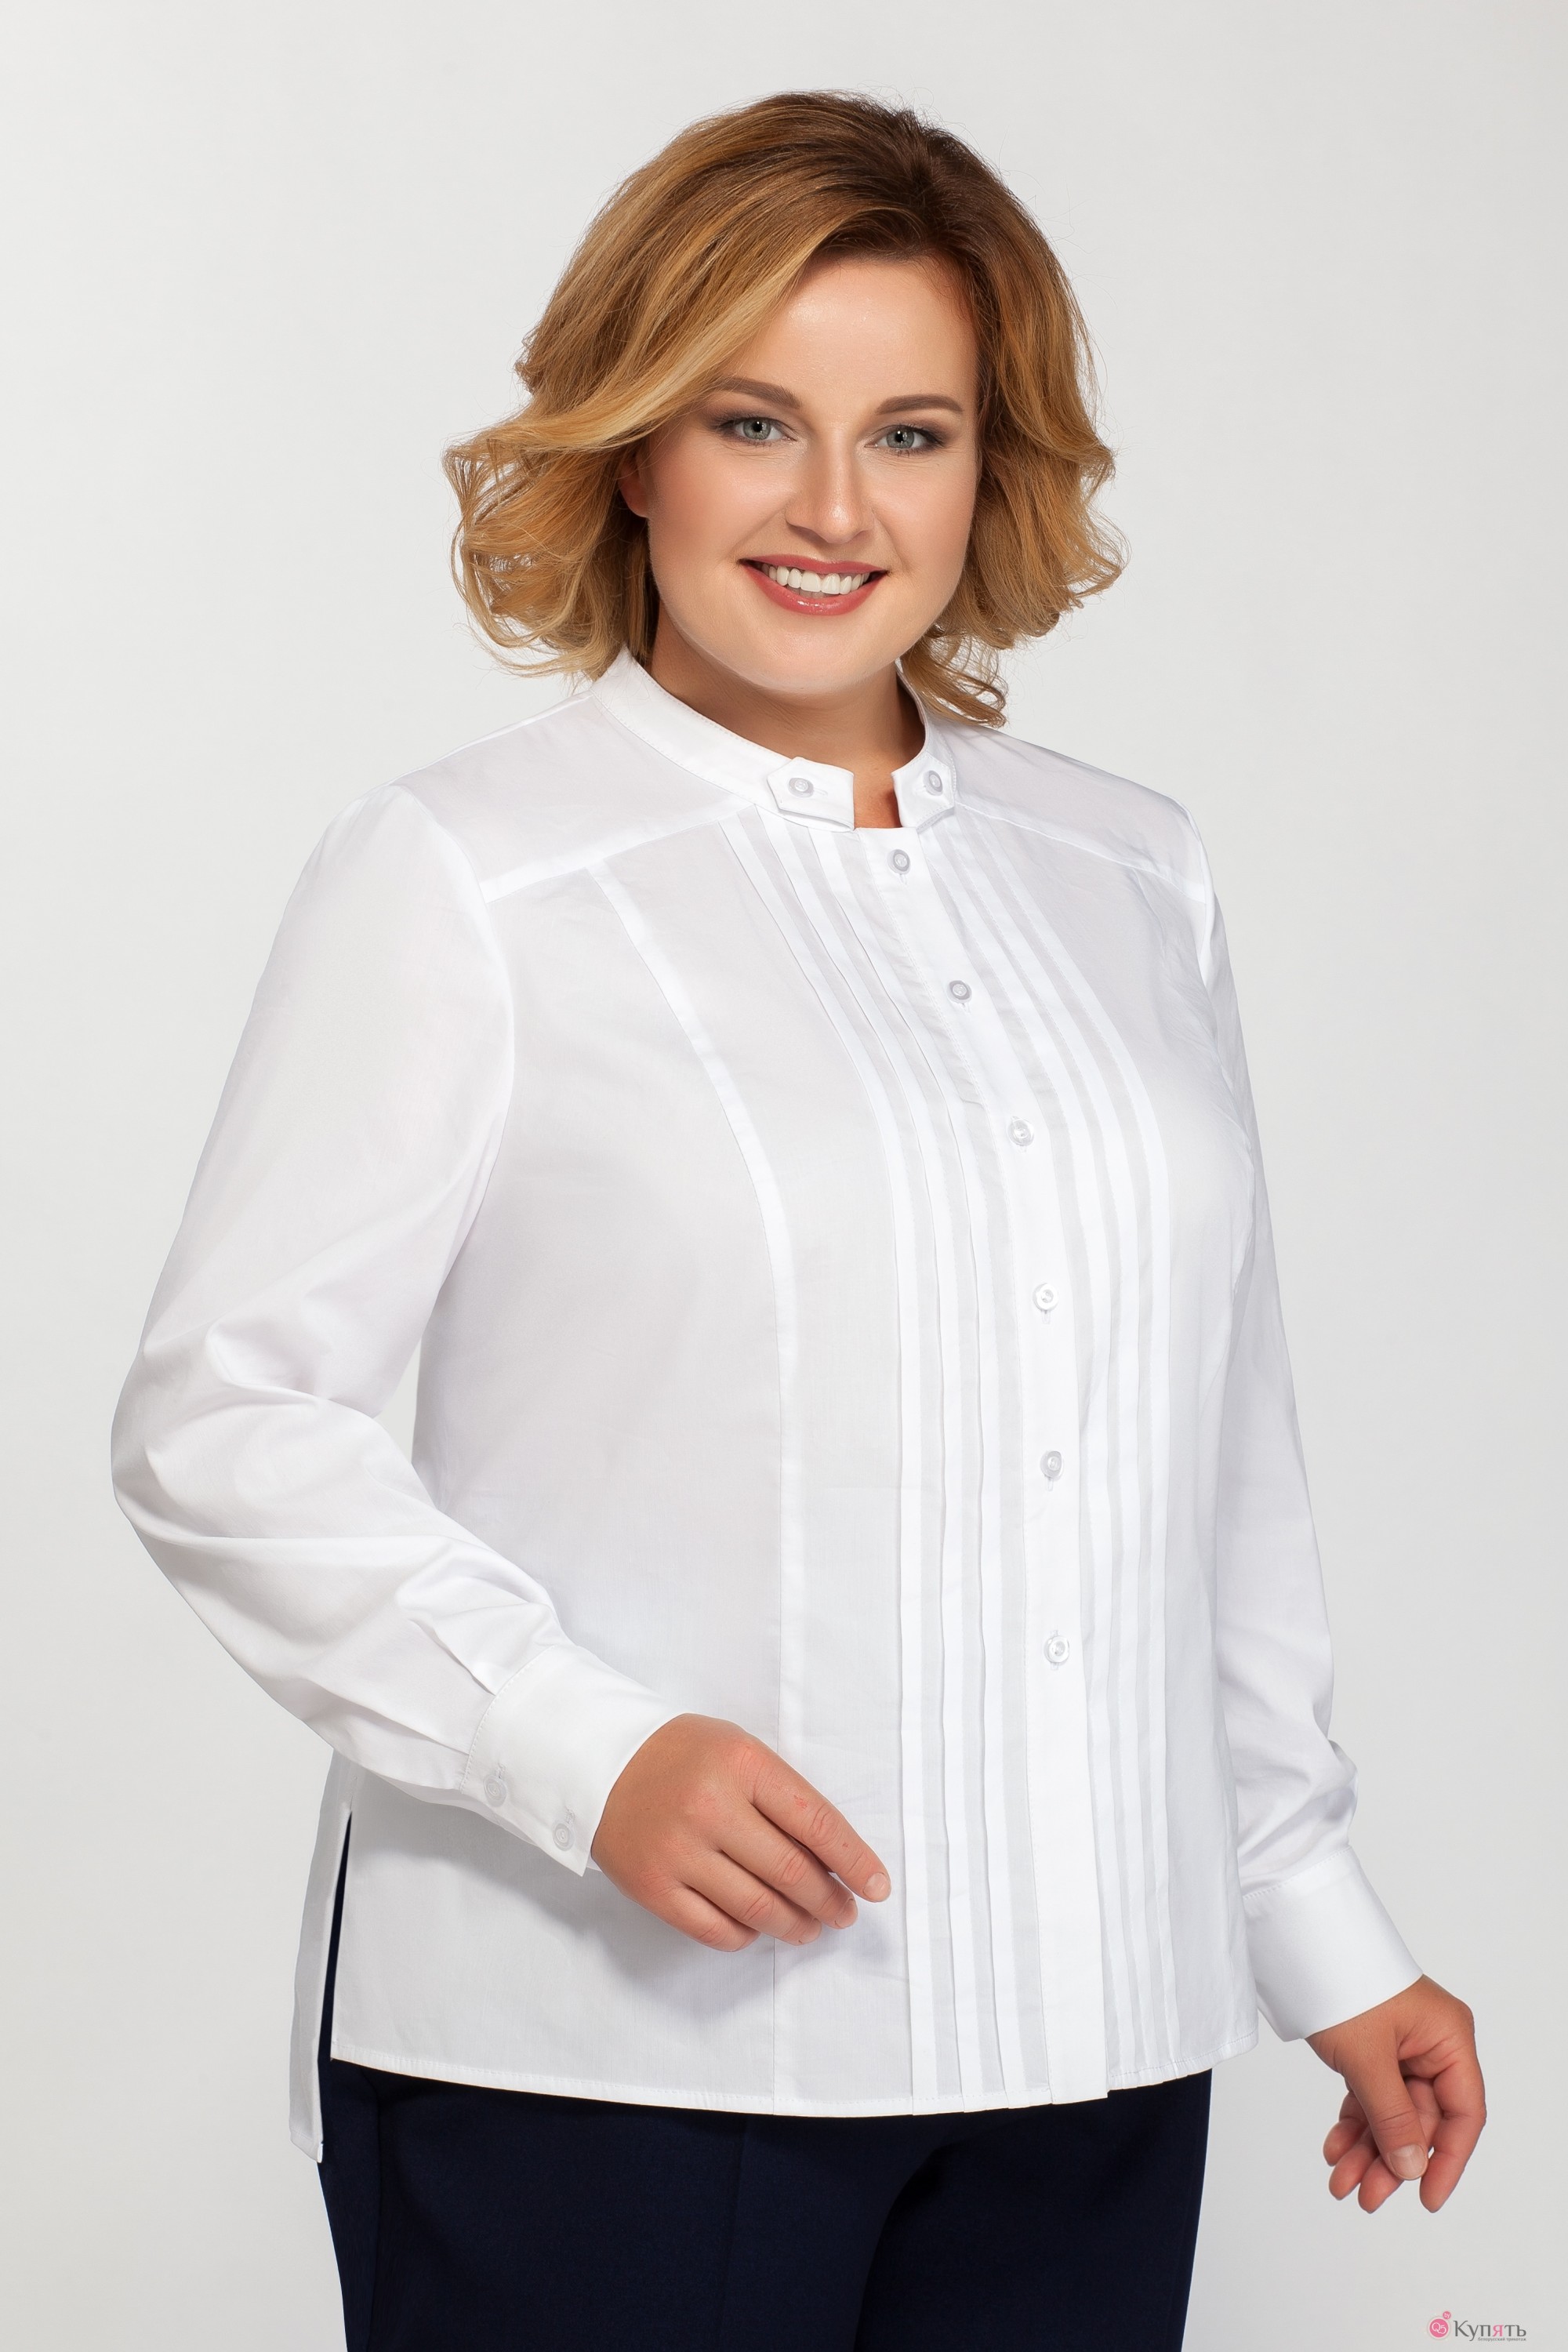 Купить блузку 54 размера. Блузка la Kona 1157 - 0. Блузки для полных женщин. Белая нарядная блузка для женщин. Блузки для полных женщин стильные.